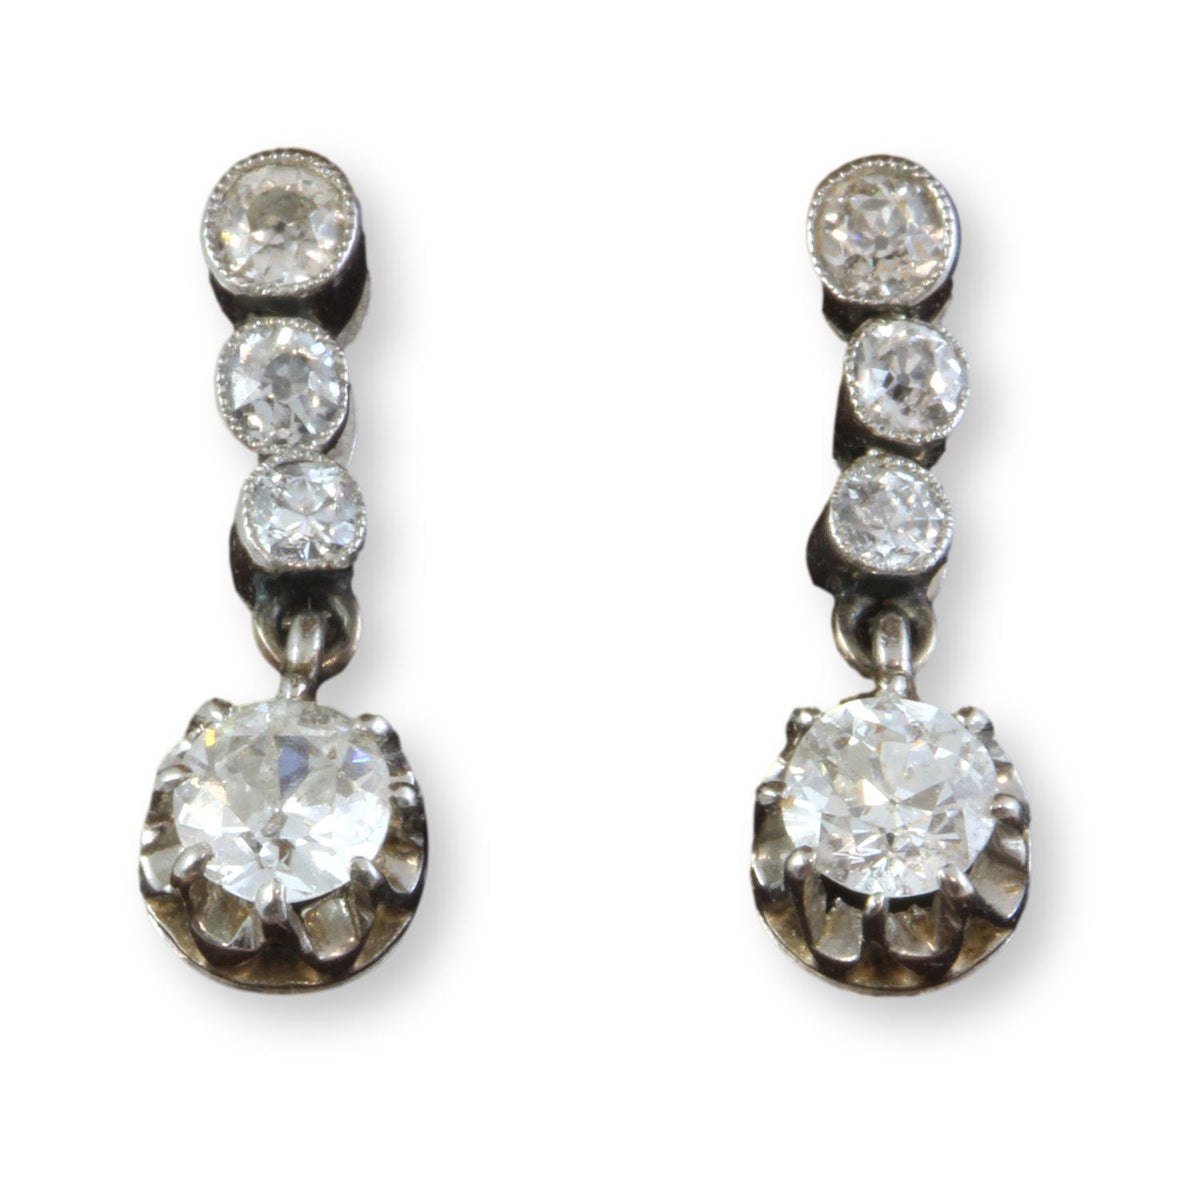 Antique 14K Gold Dangling Earrings .92ctw Old Mine Cut Diamonds